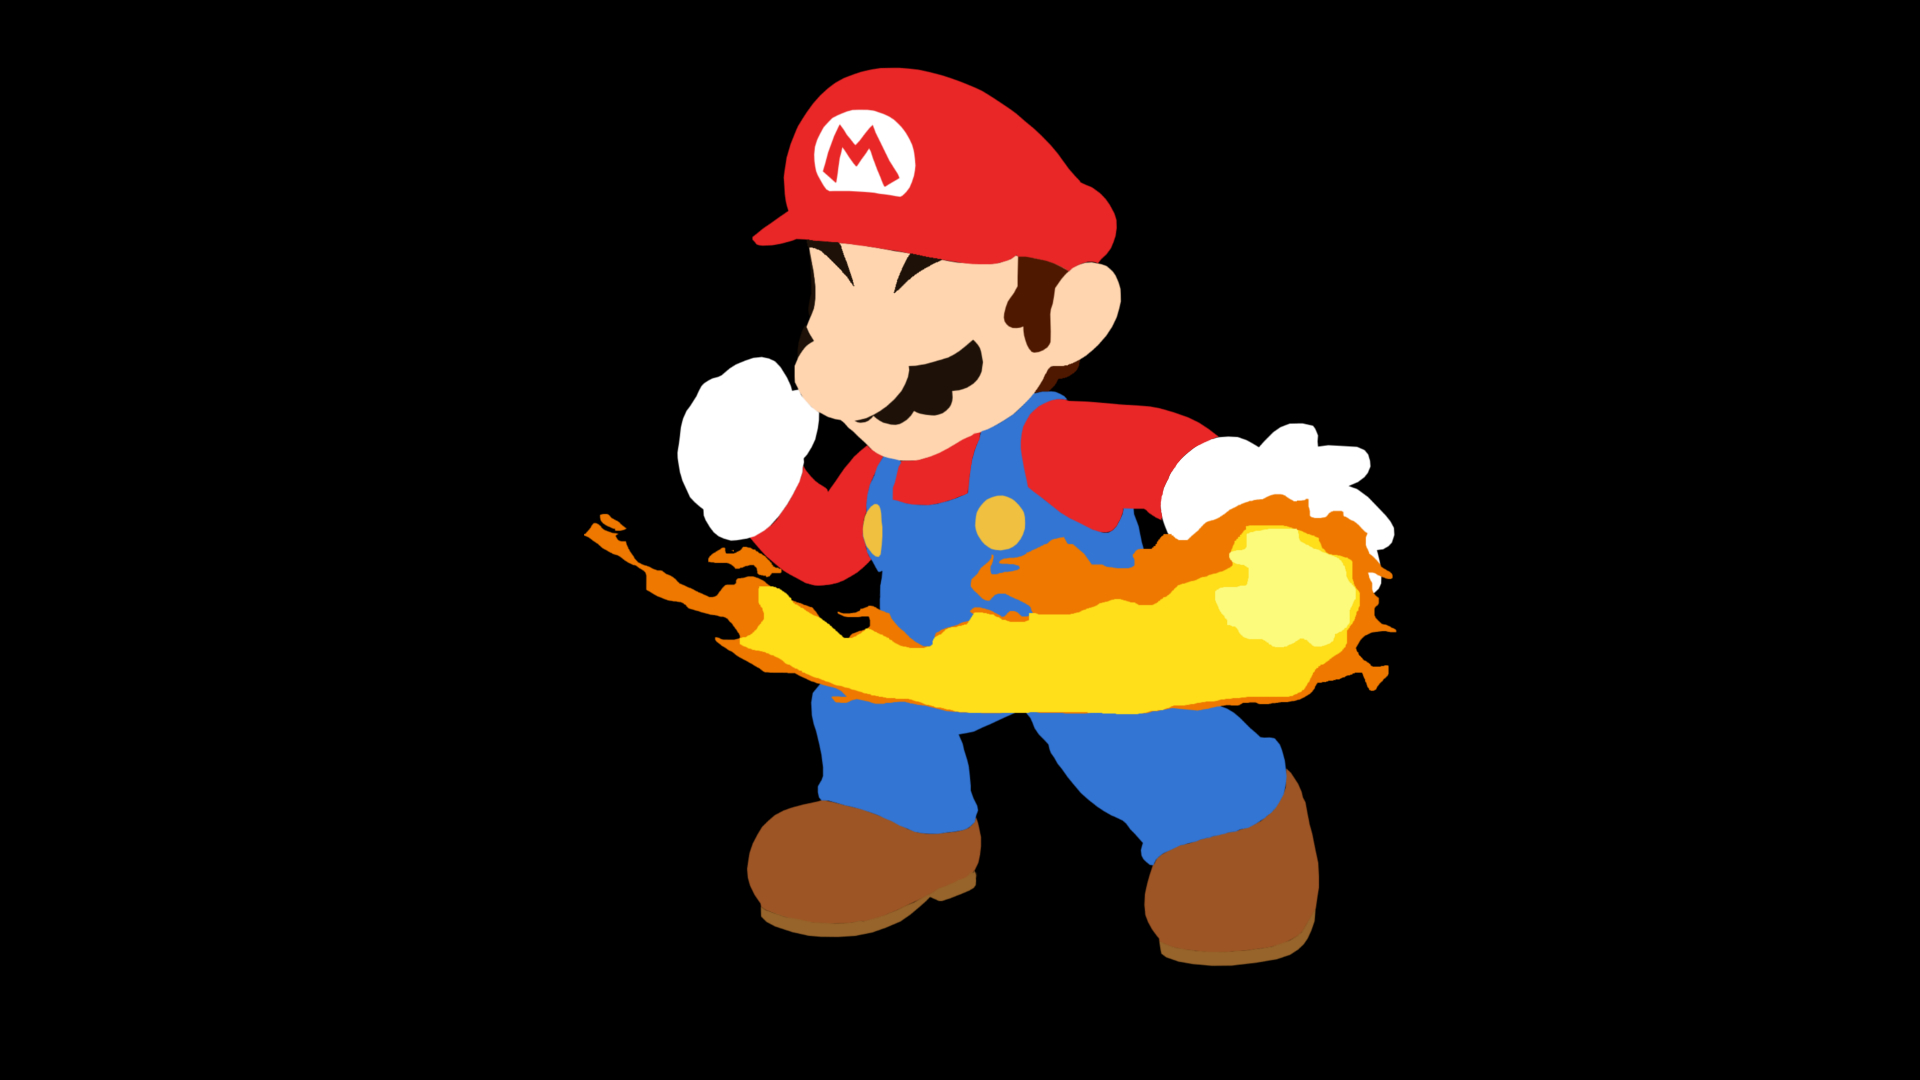 Mario Smash Bros